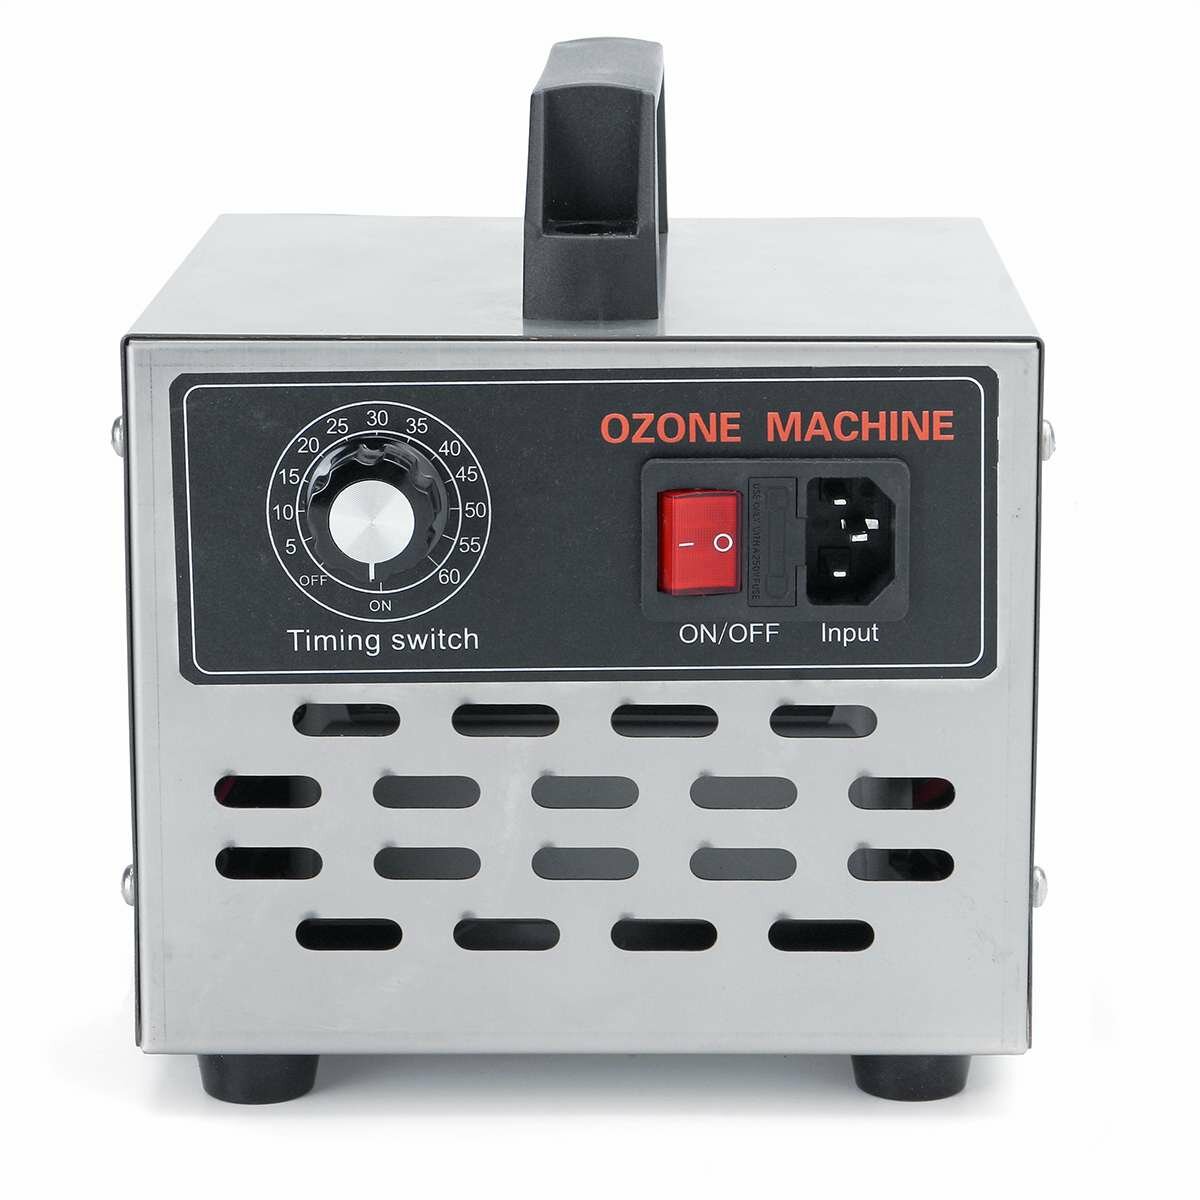 5g-24g ozongenerator ozonmachine roestvrijstalen luchtreiniger luchtreiniger desinfectie reiniging